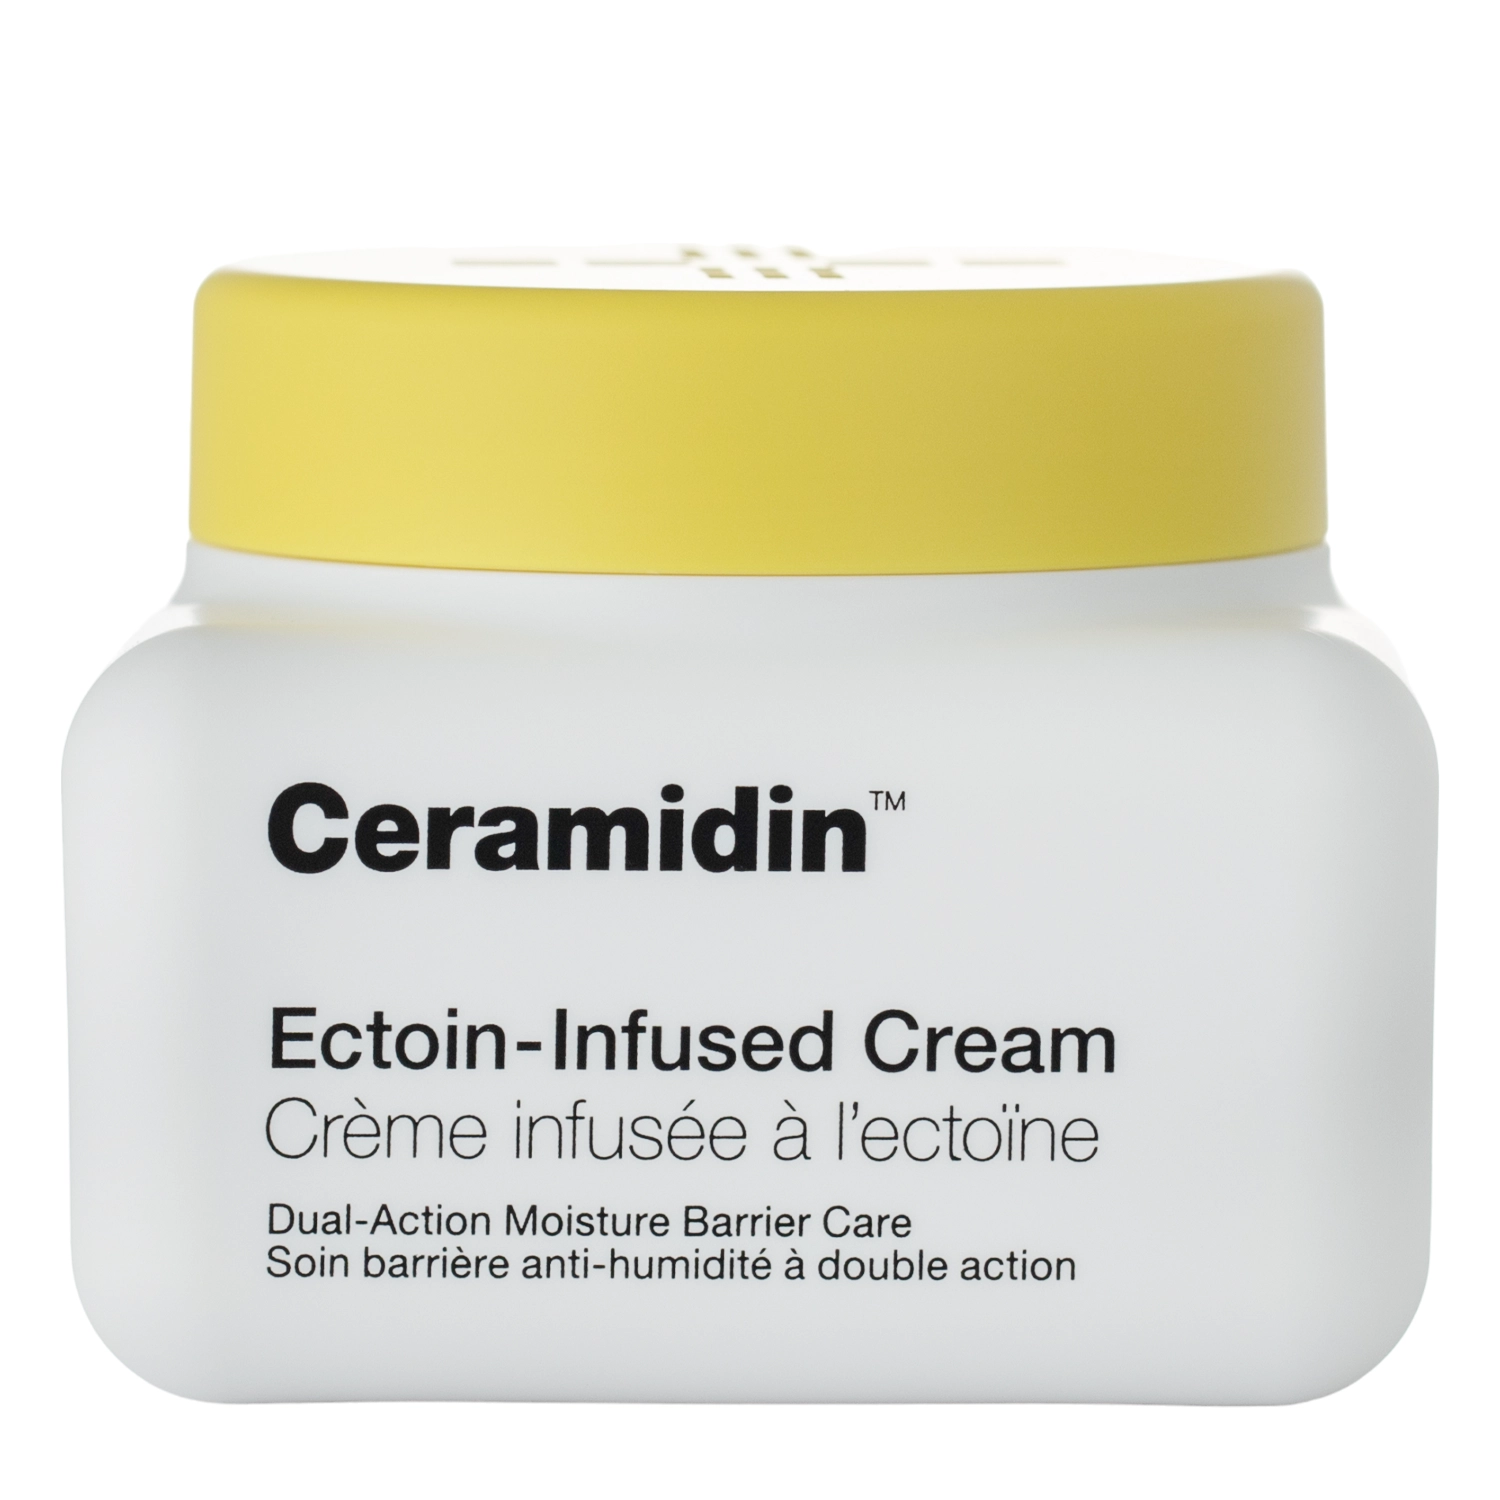 Dr.Jart+ - Ceramidin Ectoin-Infused Cream - Feuchtigkeitsspendende Gesichtscreme mit Ceramiden - 50ml